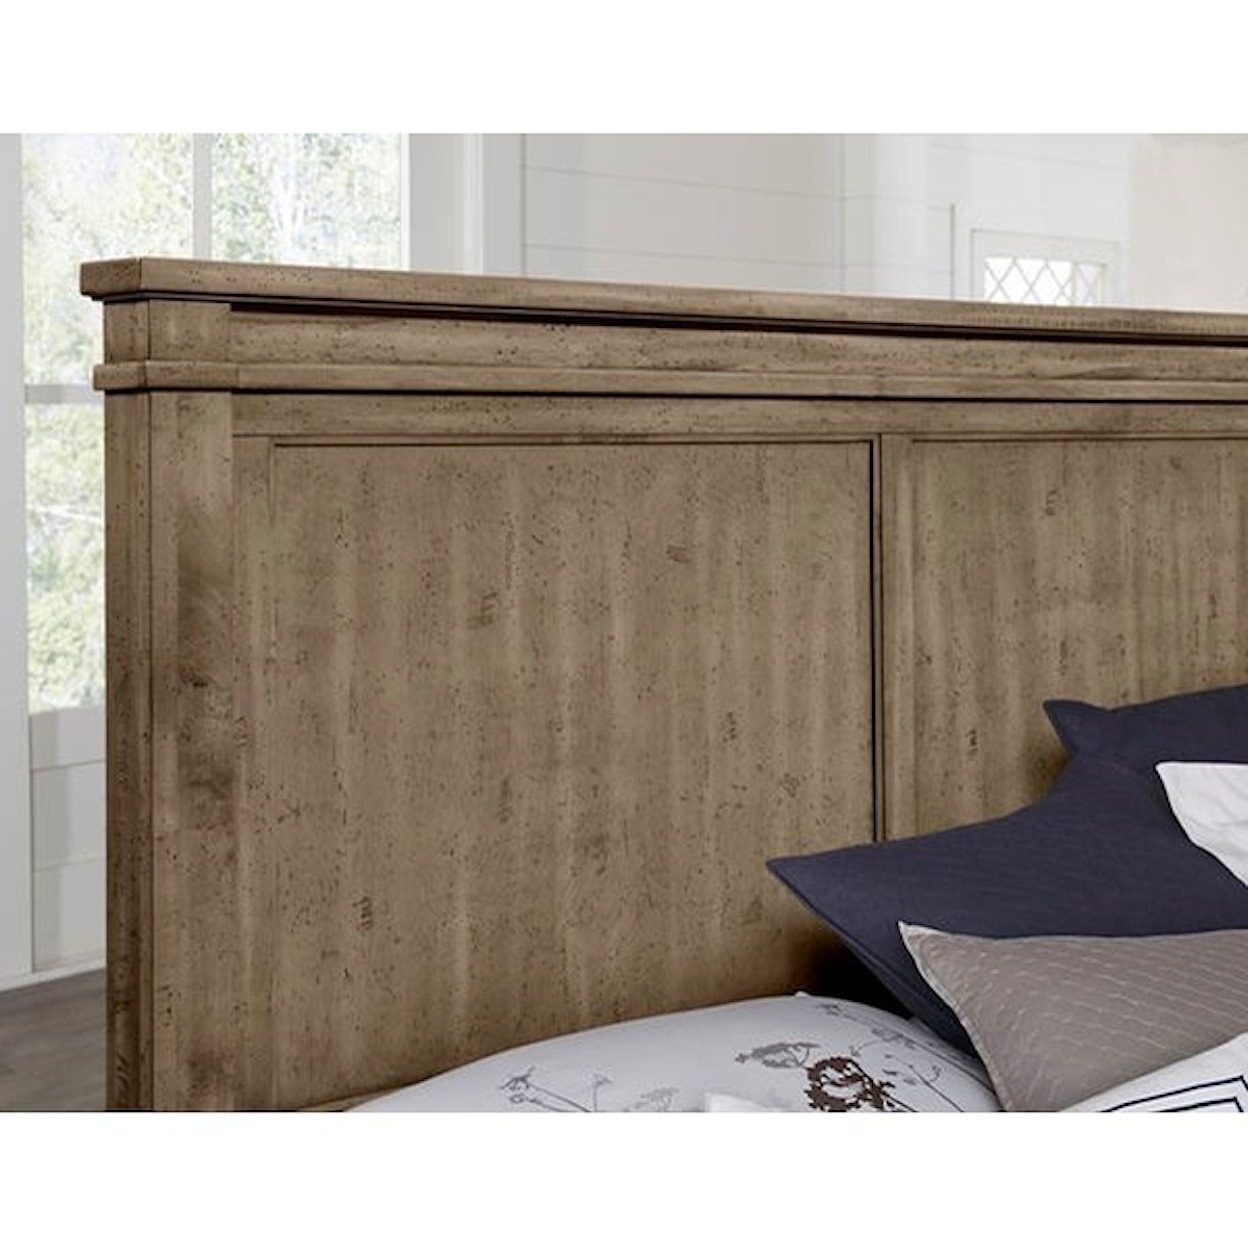 Artisan & Post Cool Rustic Queen Panel Bed